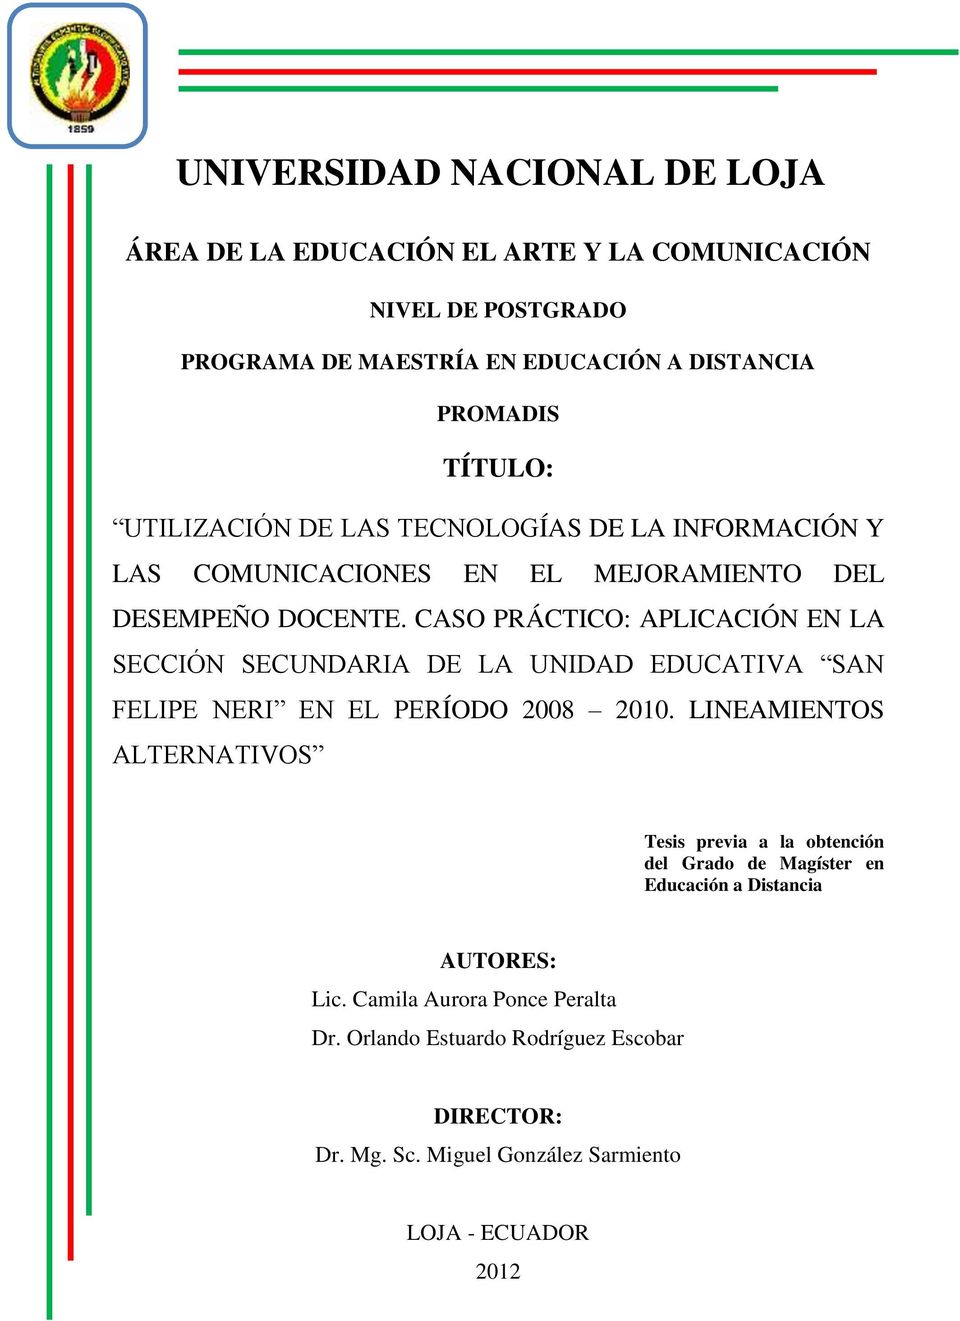 CASO PRÁCTICO: APLICACIÓN EN LA SECCIÓN SECUNDARIA DE LA UNIDAD EDUCATIVA SAN FELIPE NERI EN EL PERÍODO 2008 2010.